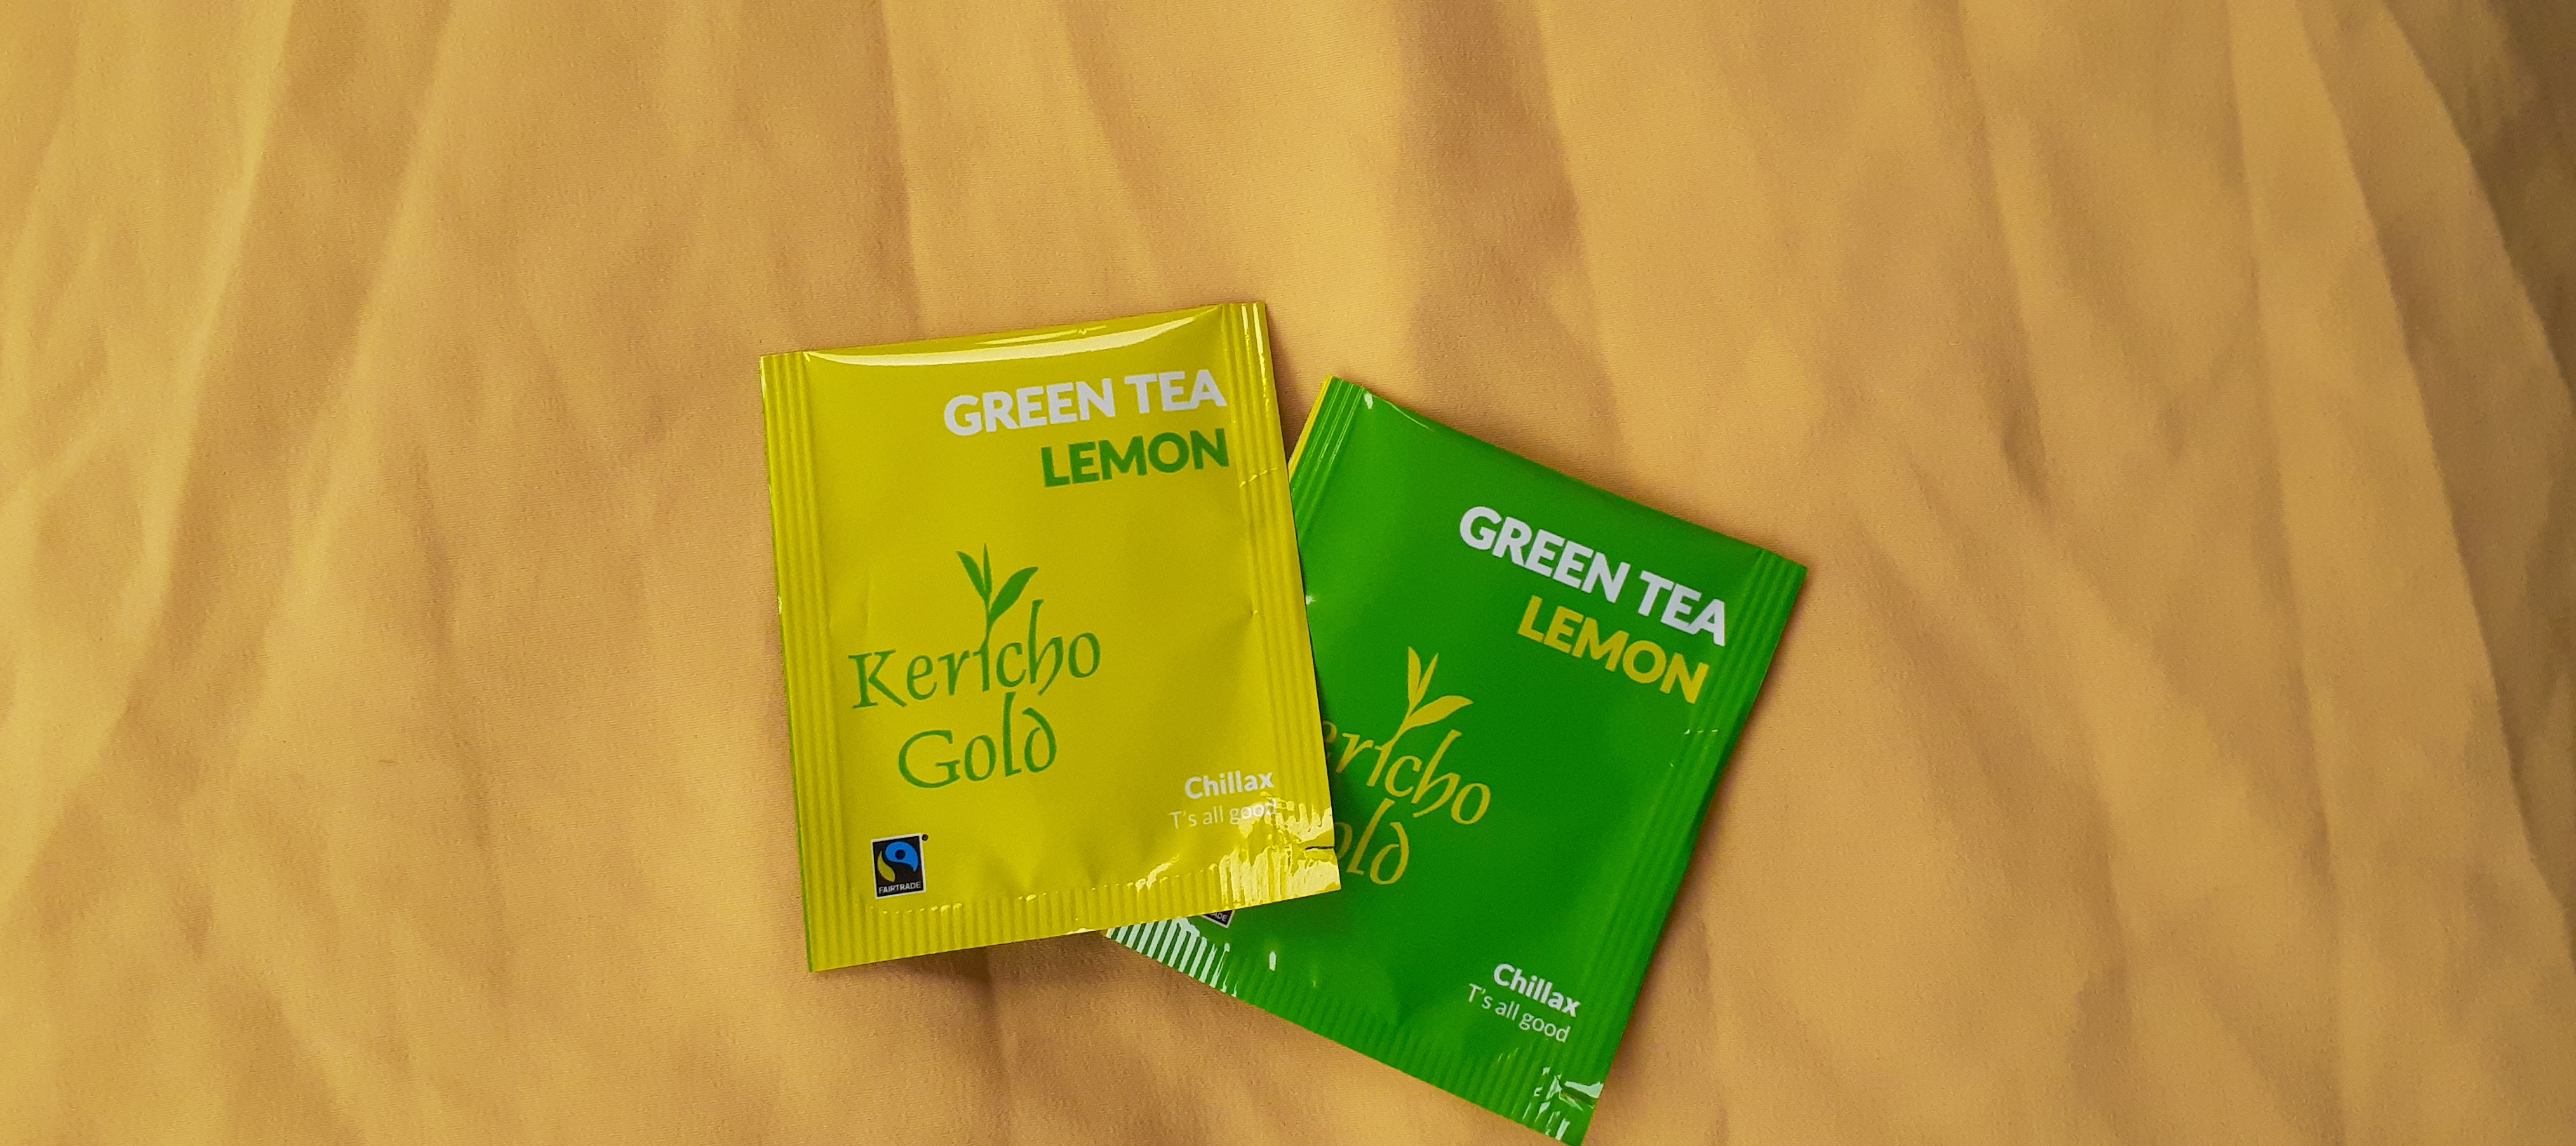 green tea, lemon tea,kericho gold tea